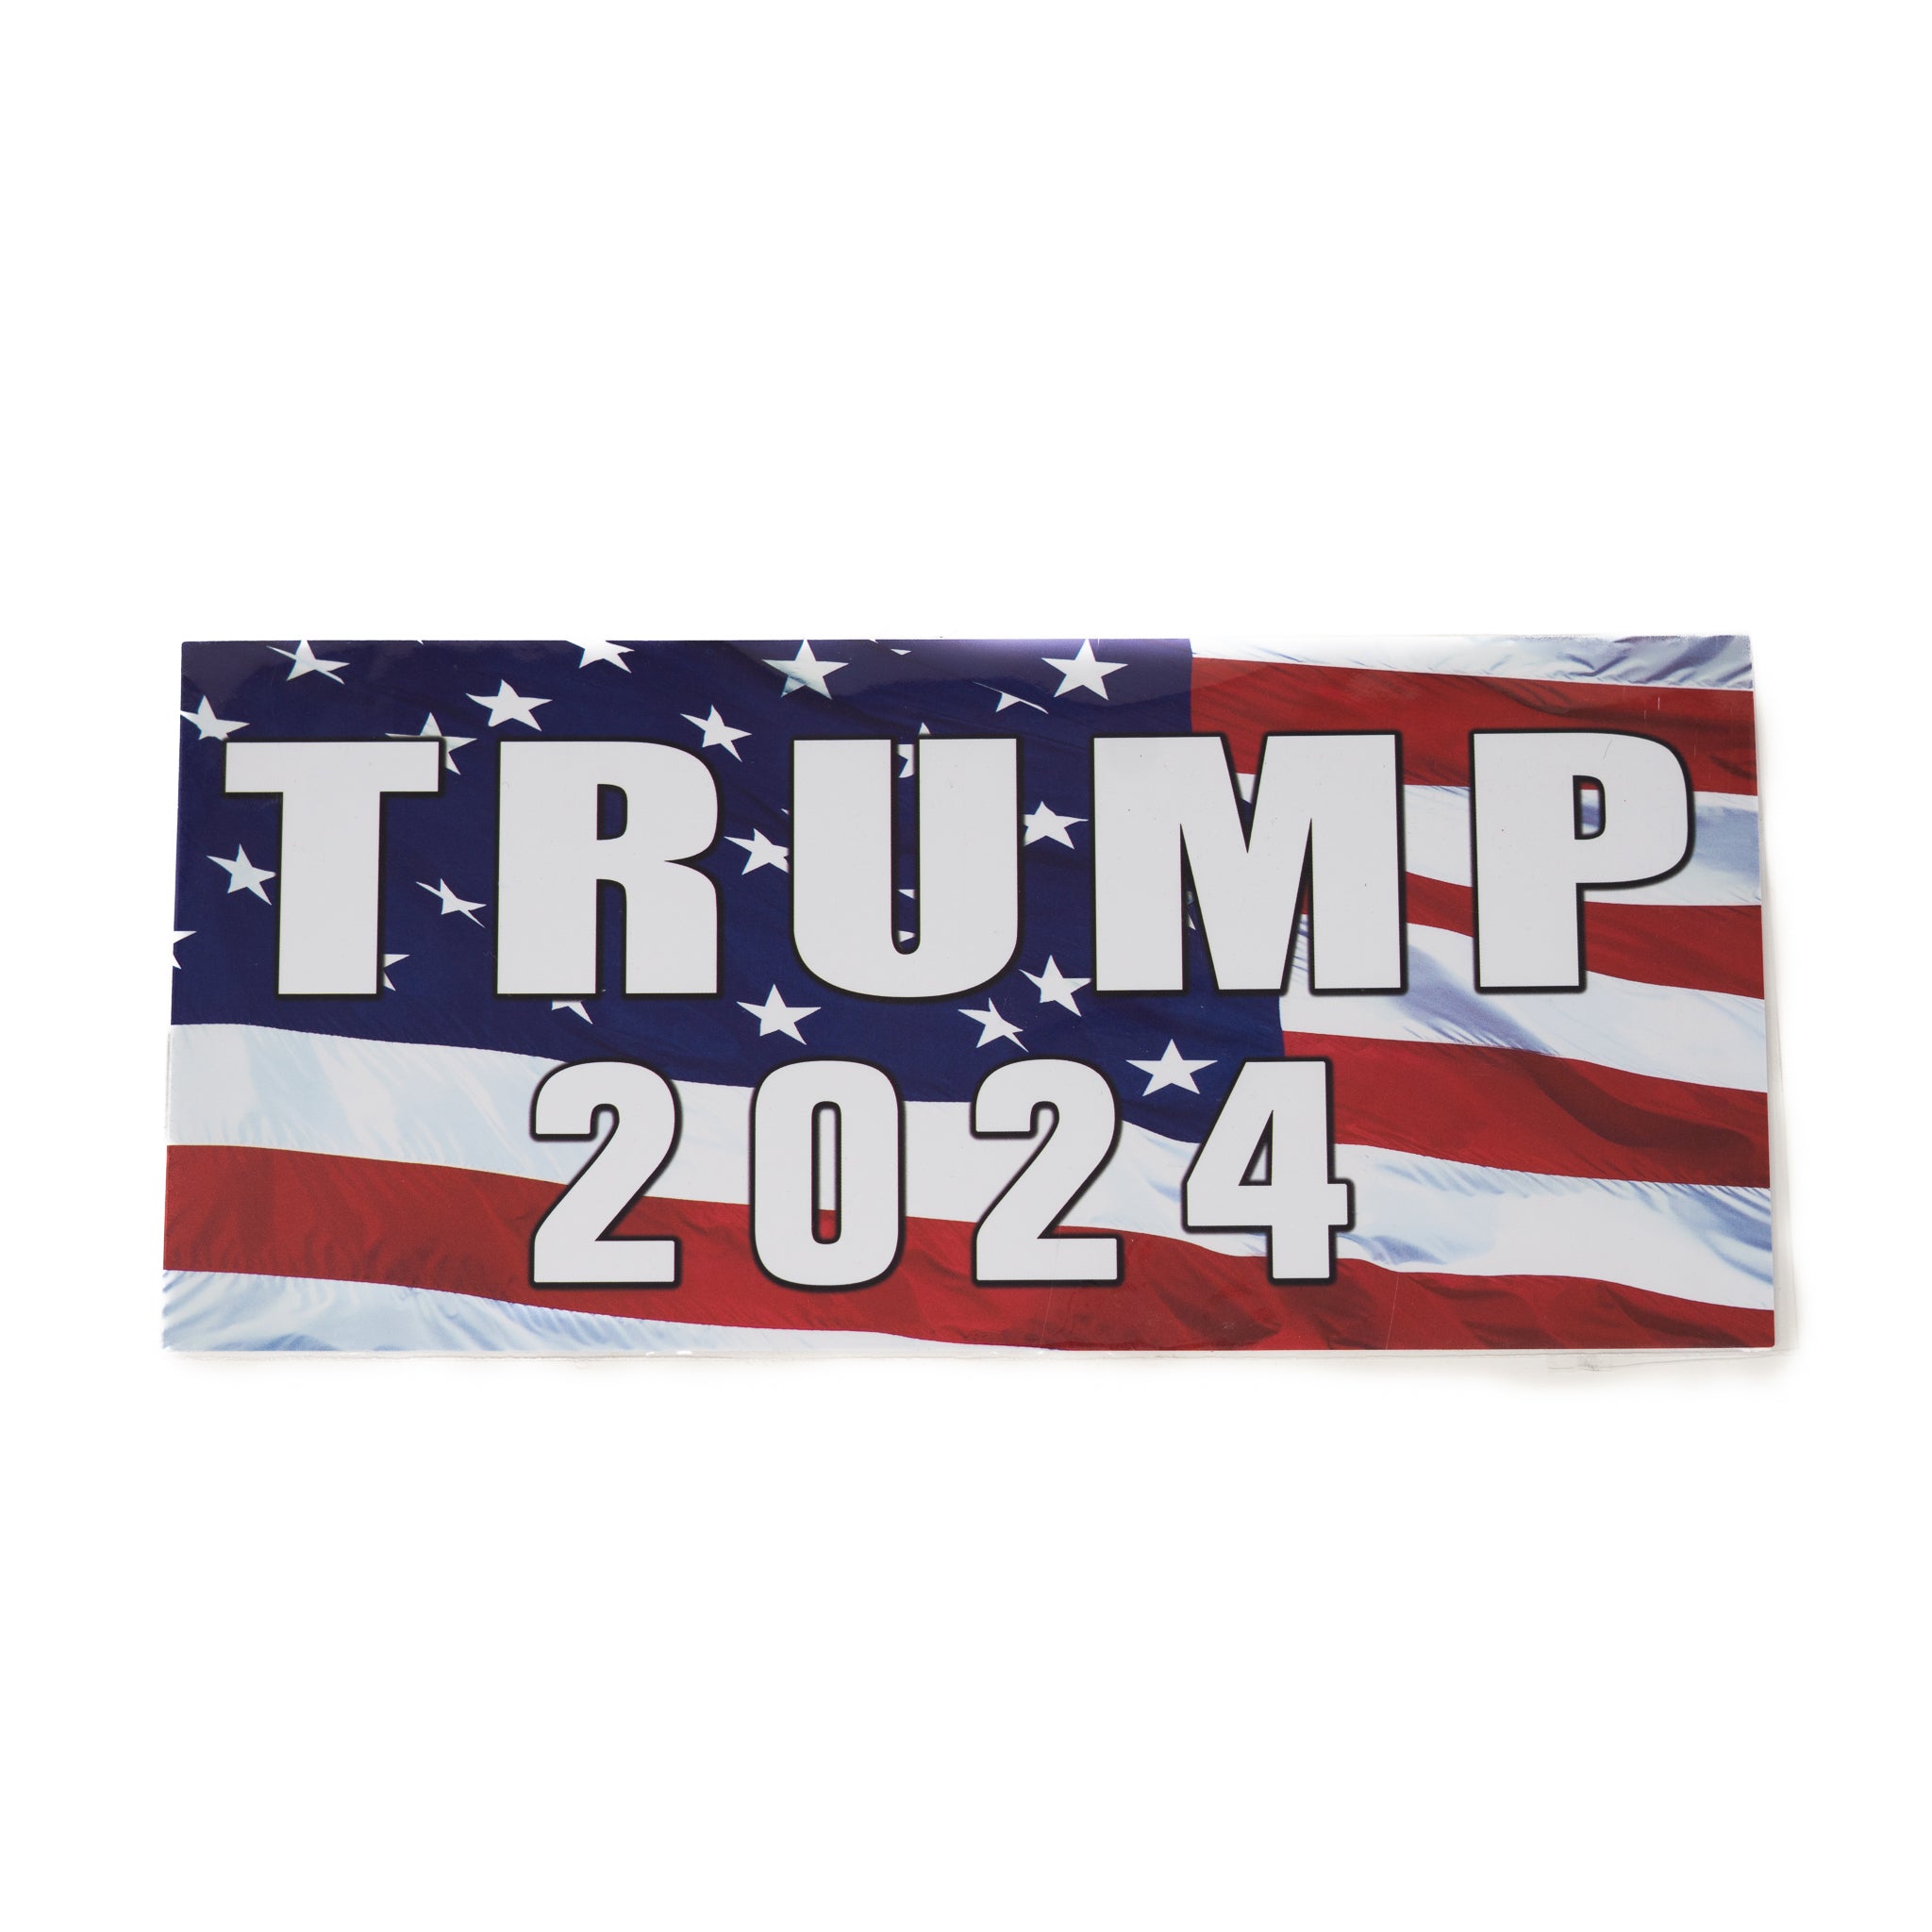 Trump 2024 Bumper Sticker